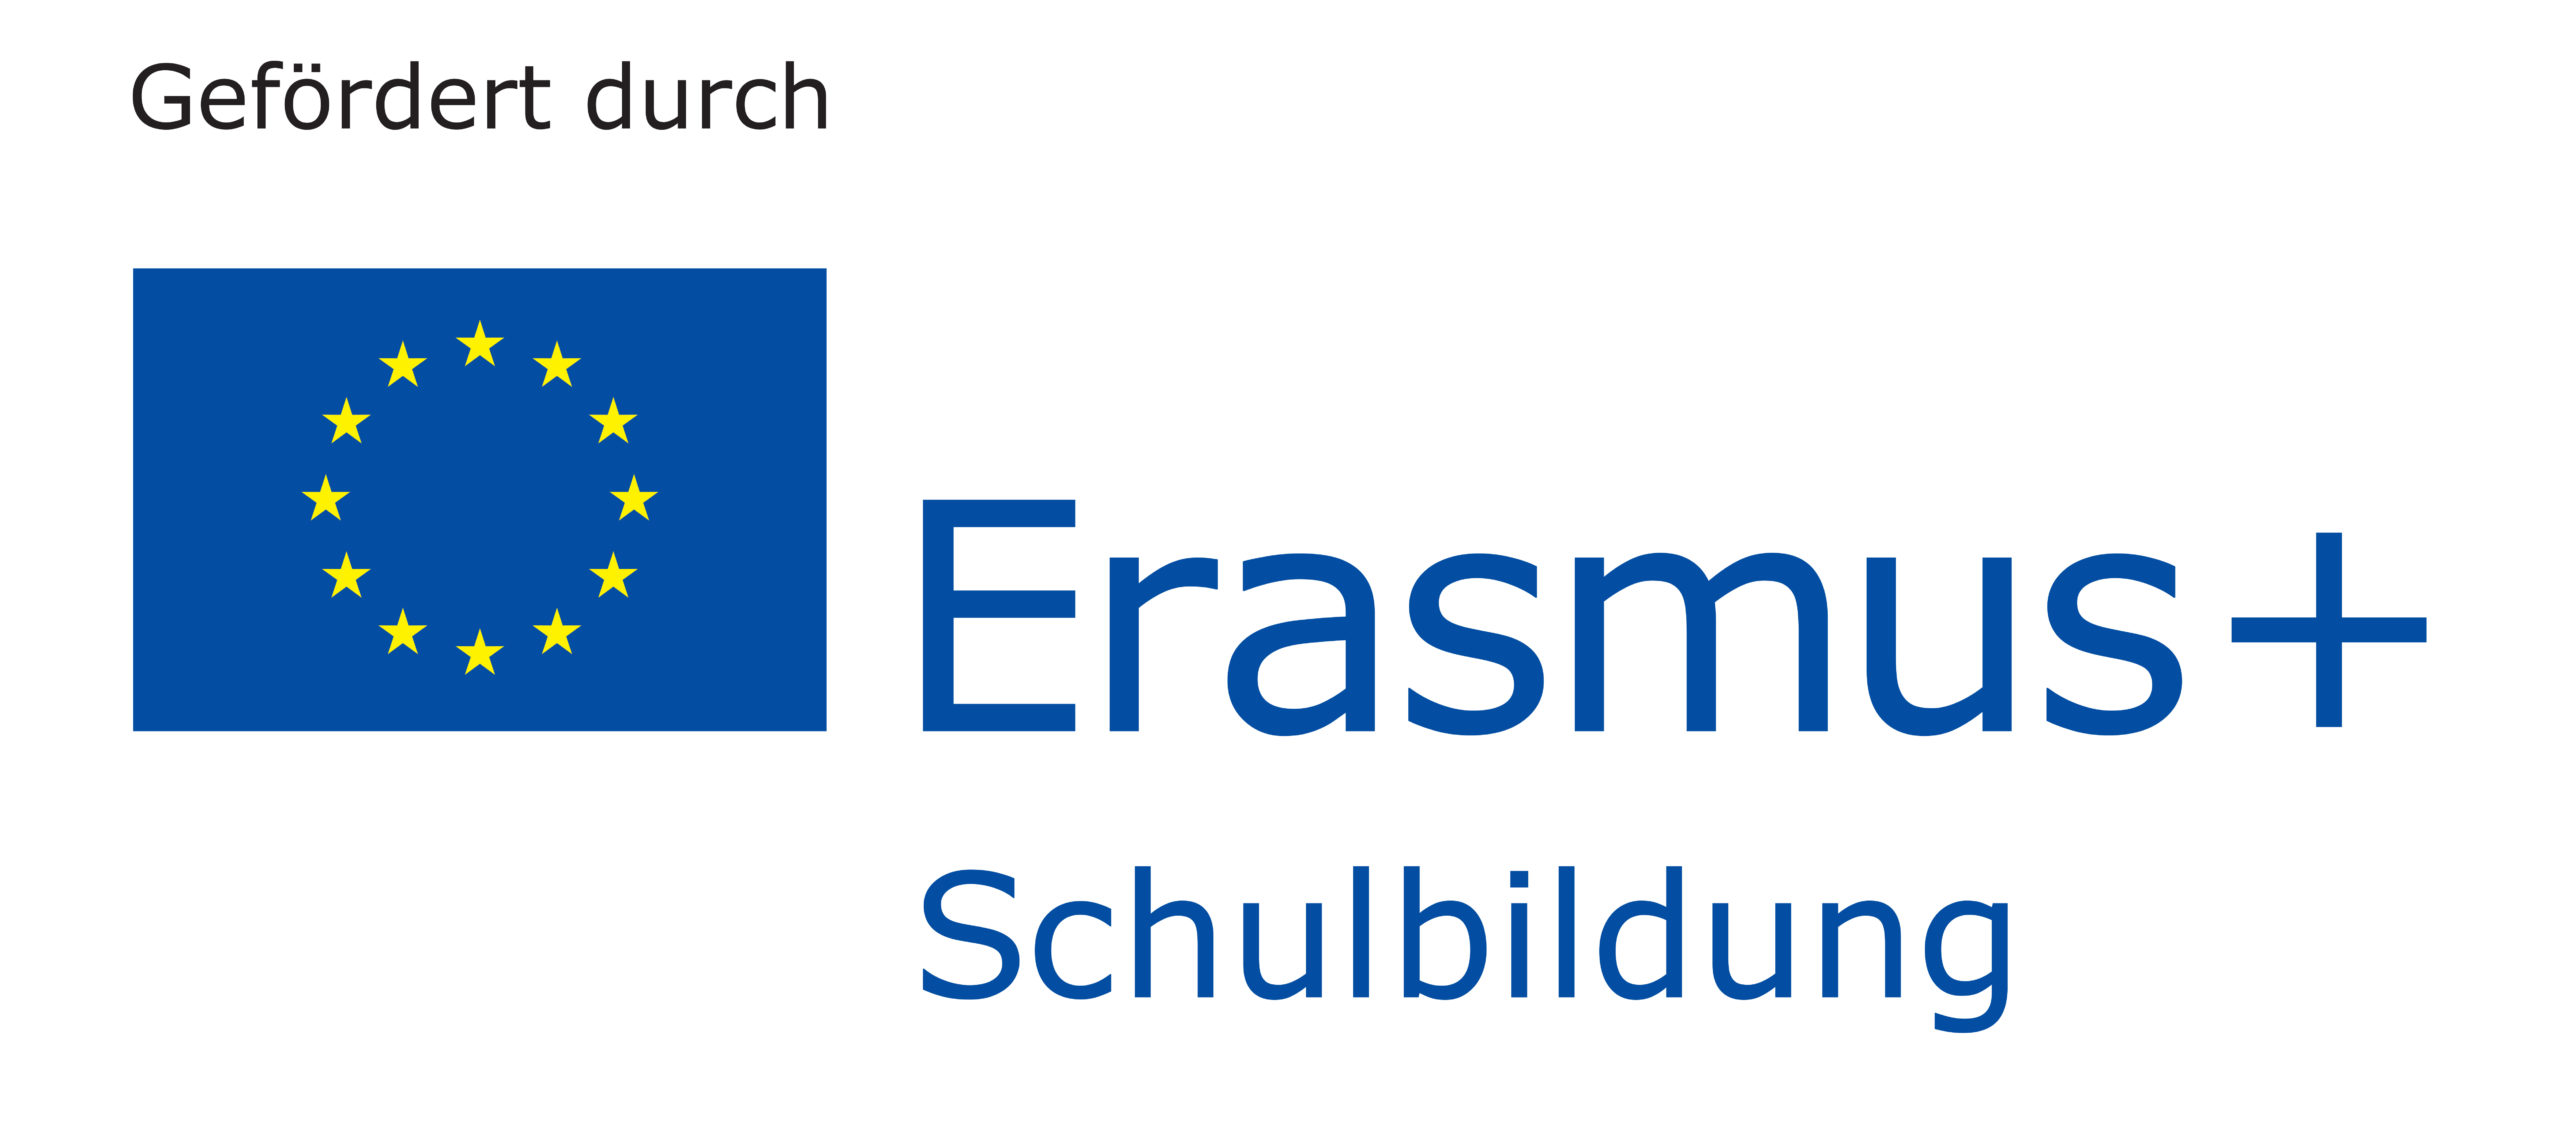 Logo Erasmus+ Schulbildung